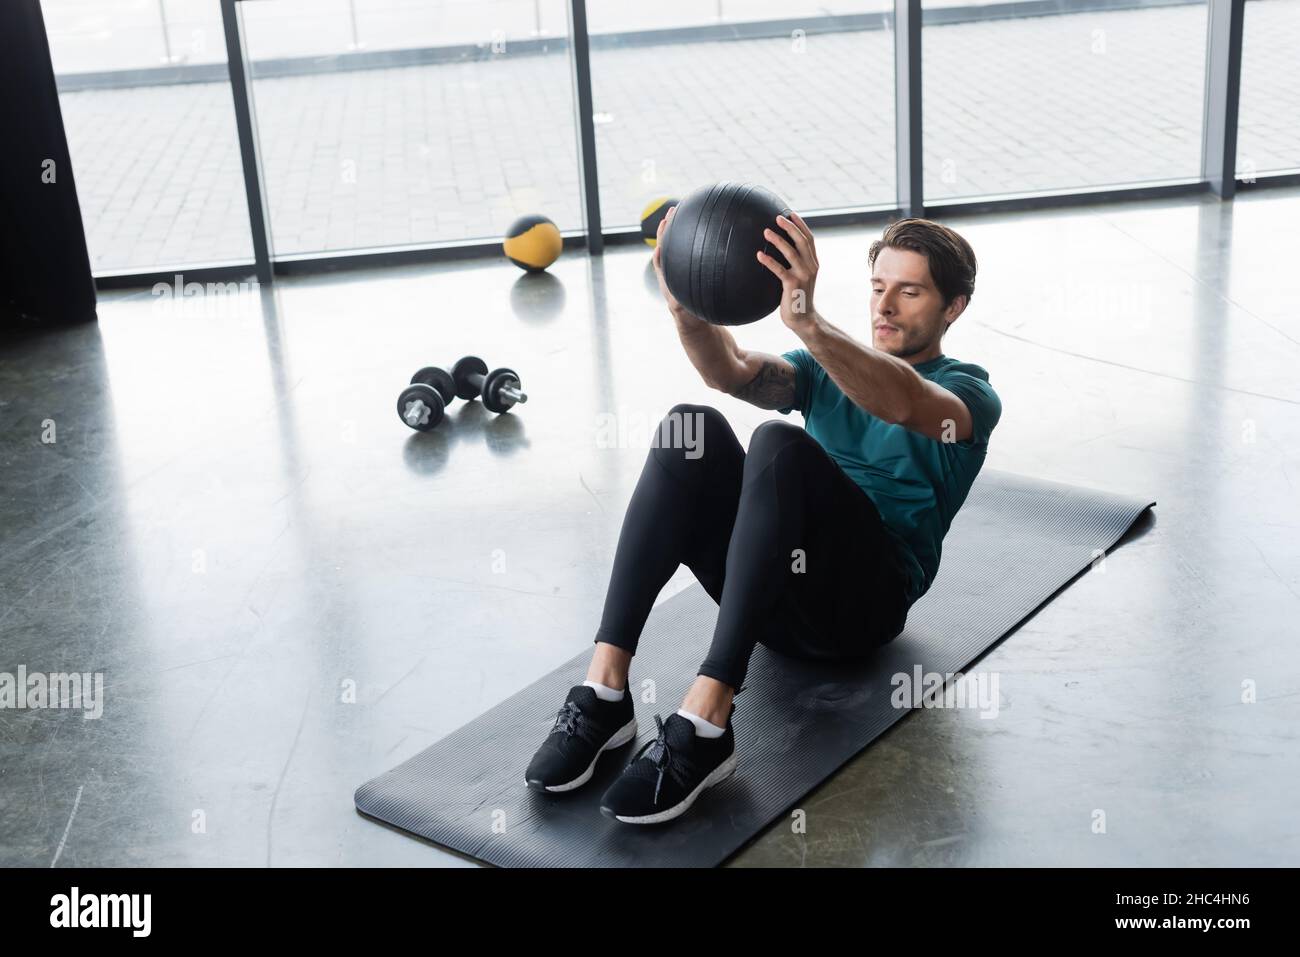 Sportif s'entraîner avec un ballon de slam sur un tapis de fitness dans le centre sportif Banque D'Images